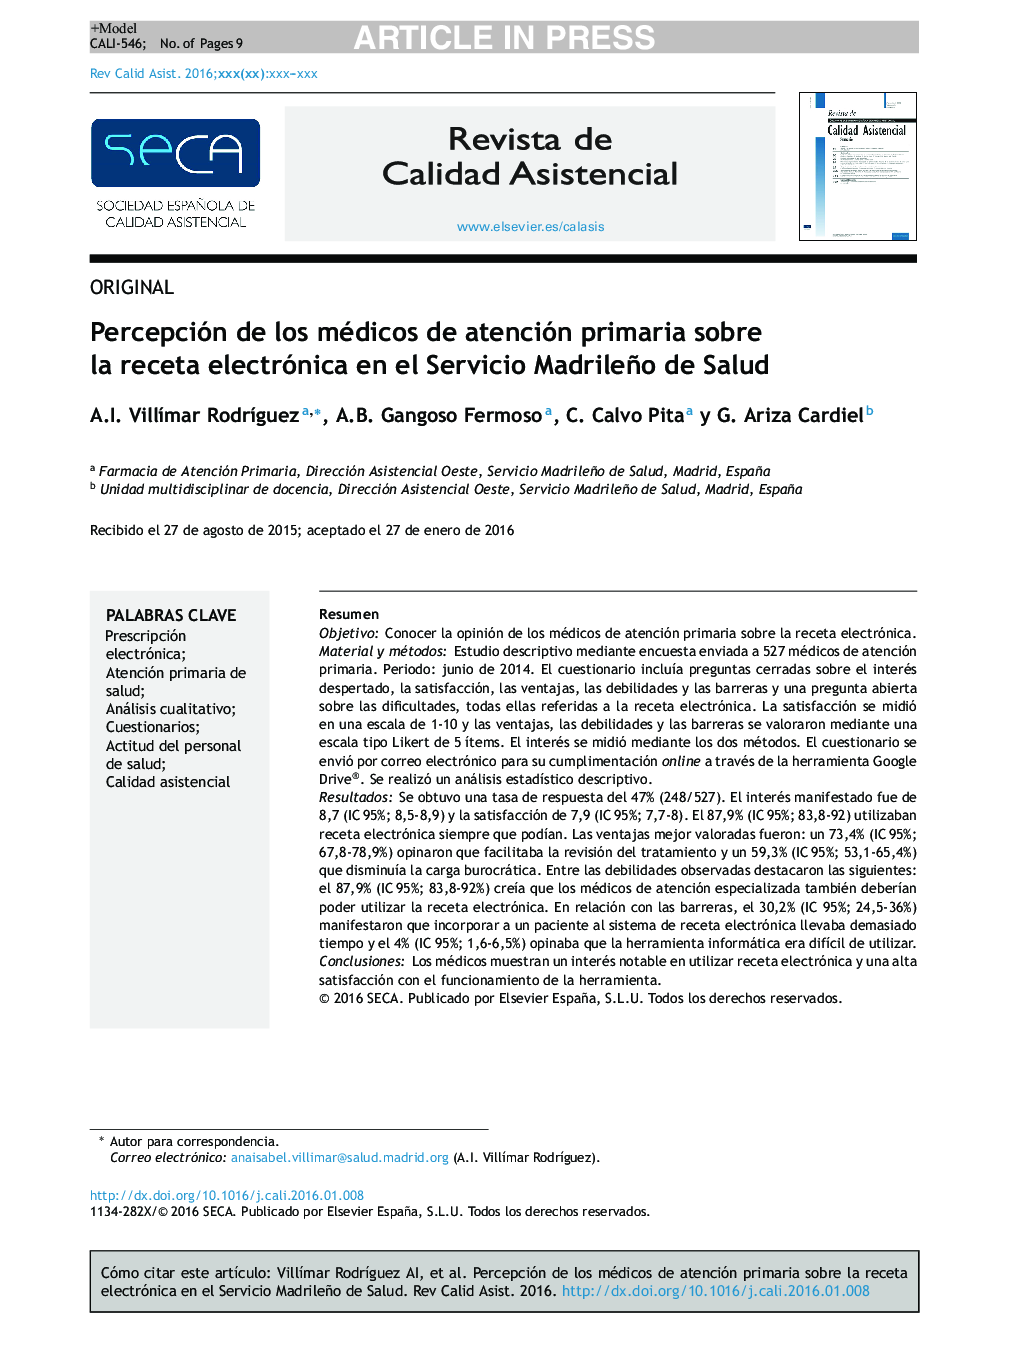 Percepción de los médicos de atención primaria sobre la receta electrónica en el Servicio Madrileño de Salud